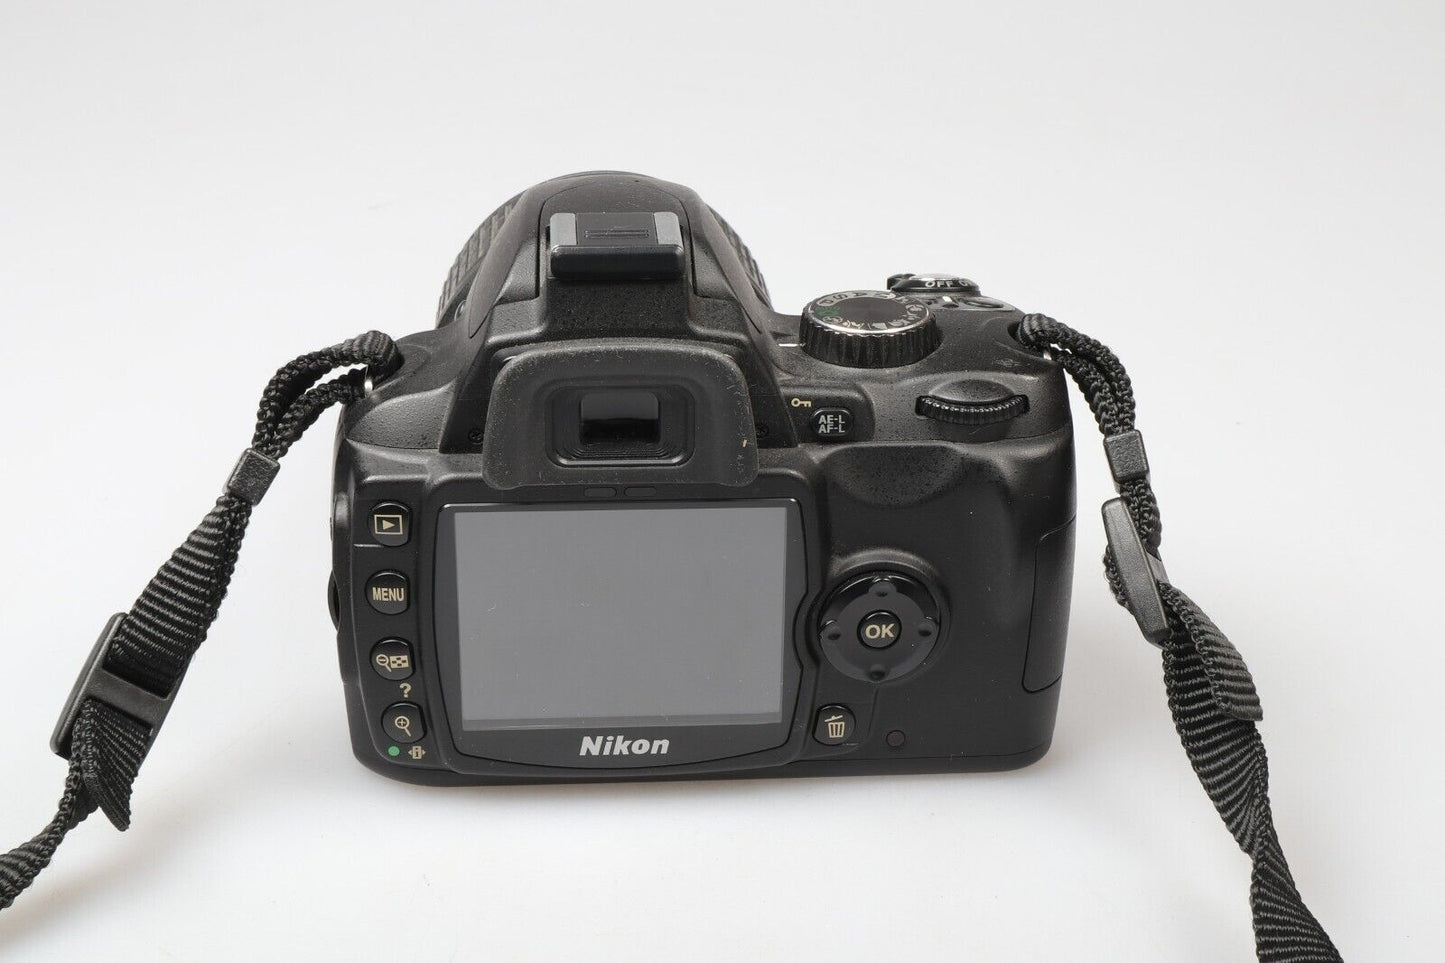 Nikon D69 | DSLR Camera | 10.2MP | NIKKOR AF-S 18-55mm Lens